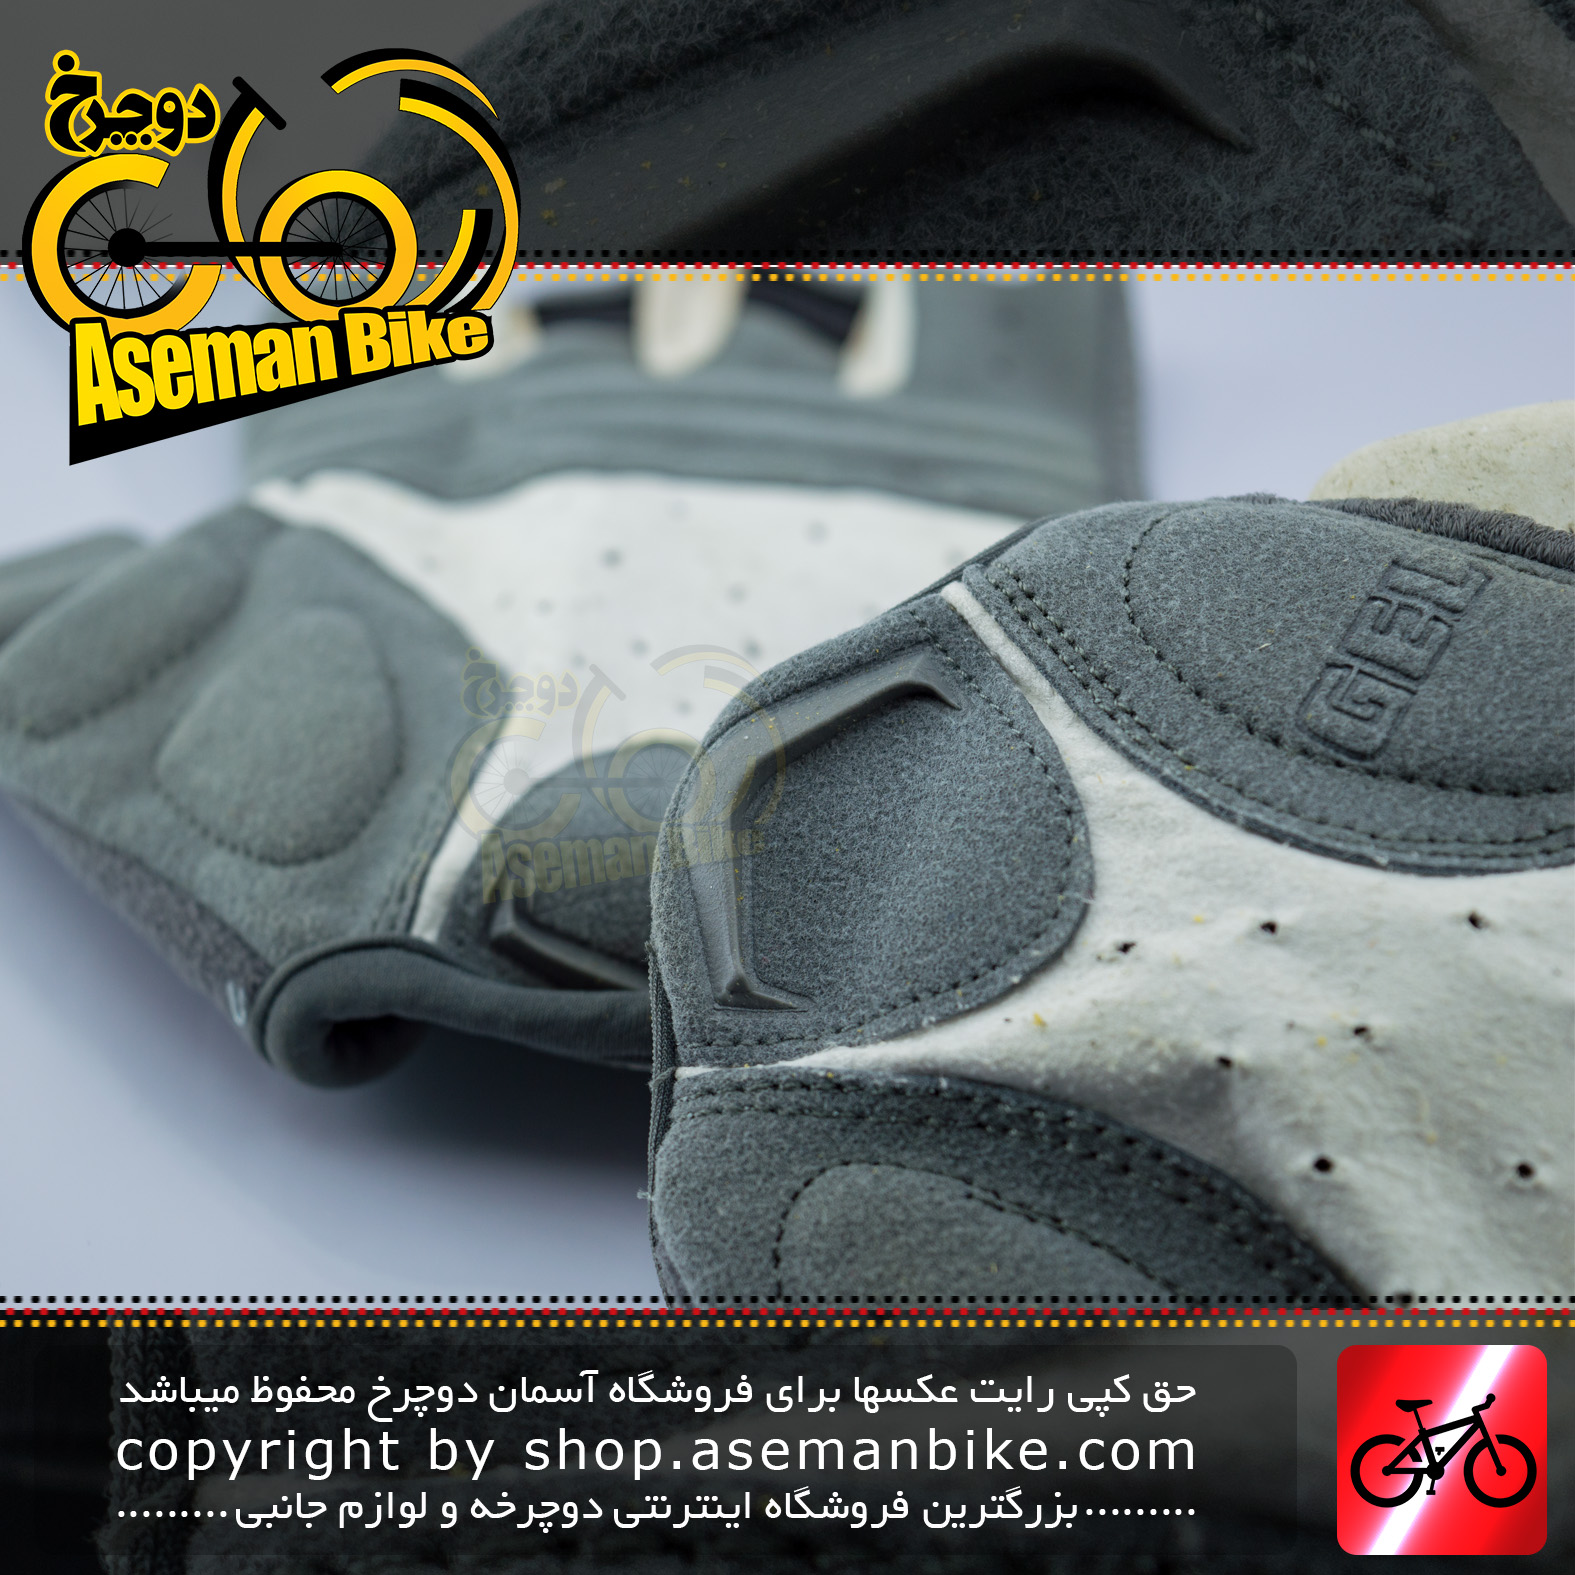 دستکش دوچرخه سواری ورزشی اسپید ژل دار مدل نیمه رنگ سفید/خاکستری تیره Speed Cycling Glove Half Gel White/Dark Gray